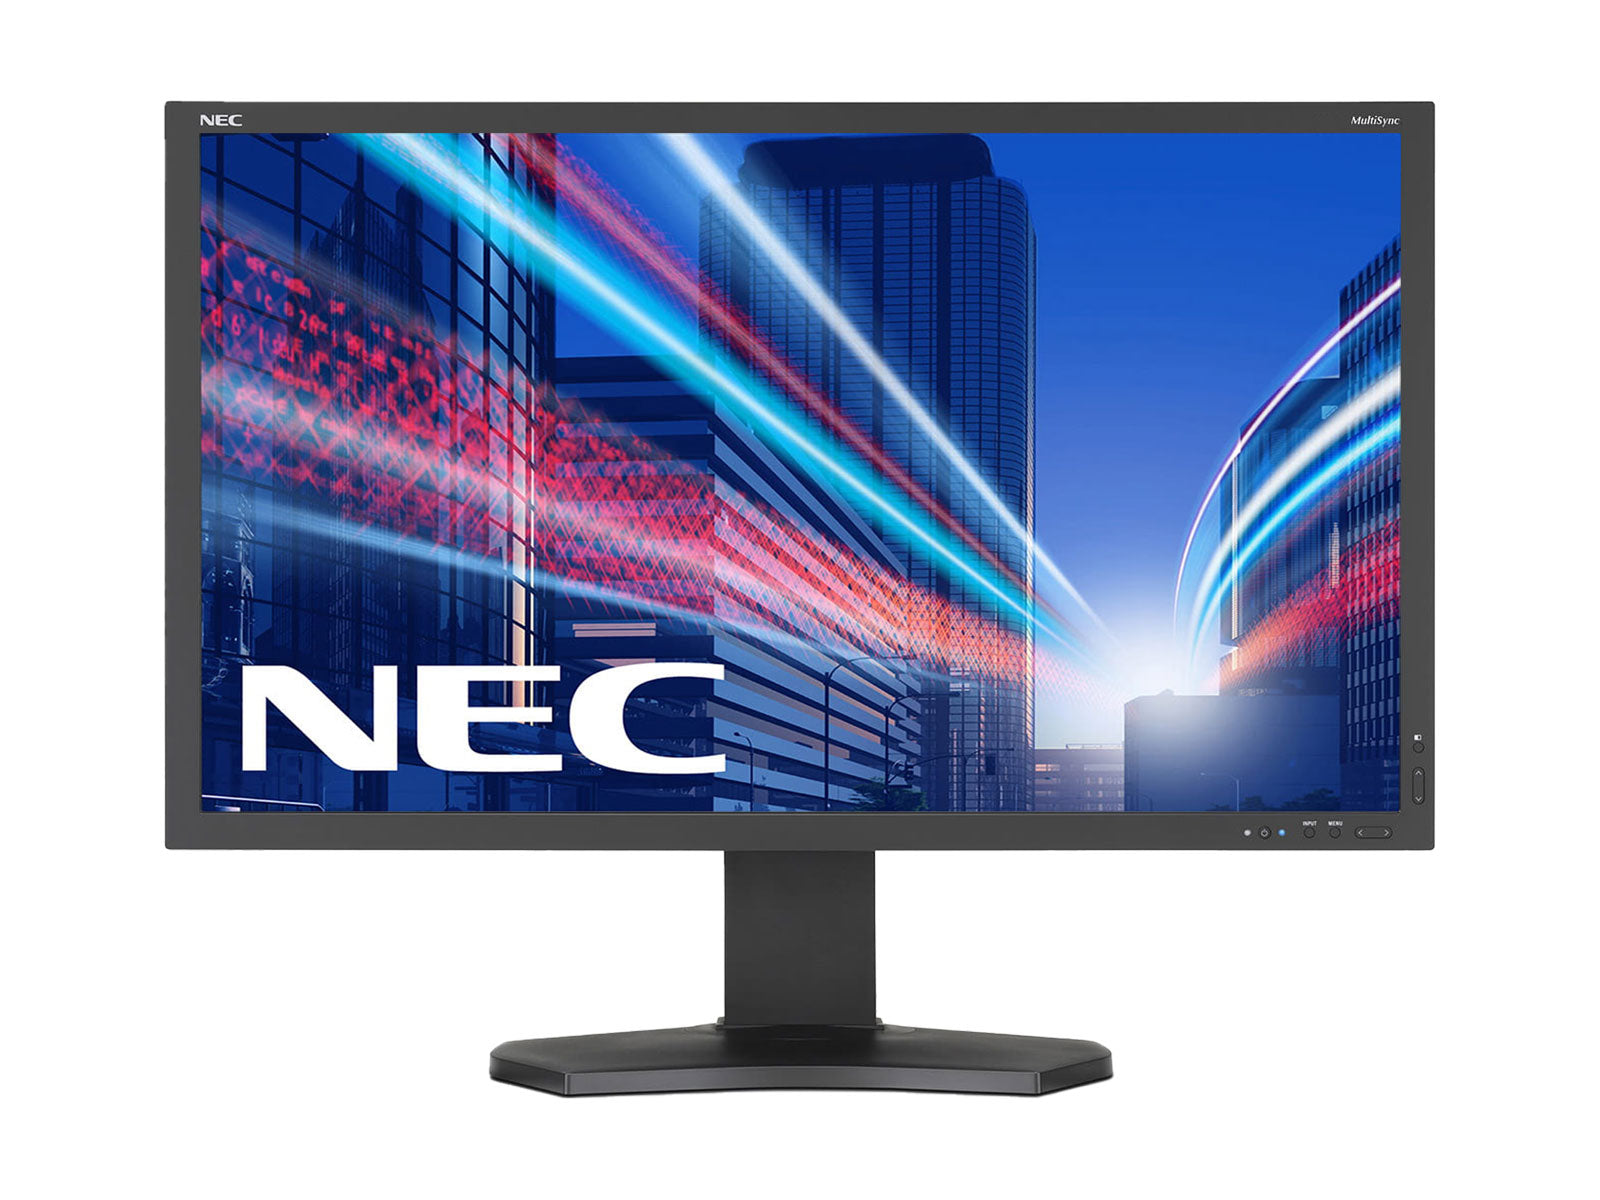 NEC MultiSync PA241W 24 インチ WUXGA 1920 x 1200 ワイドスクリーン プロフェッショナル グラフィック ディスプレイ モニター (PA241W)